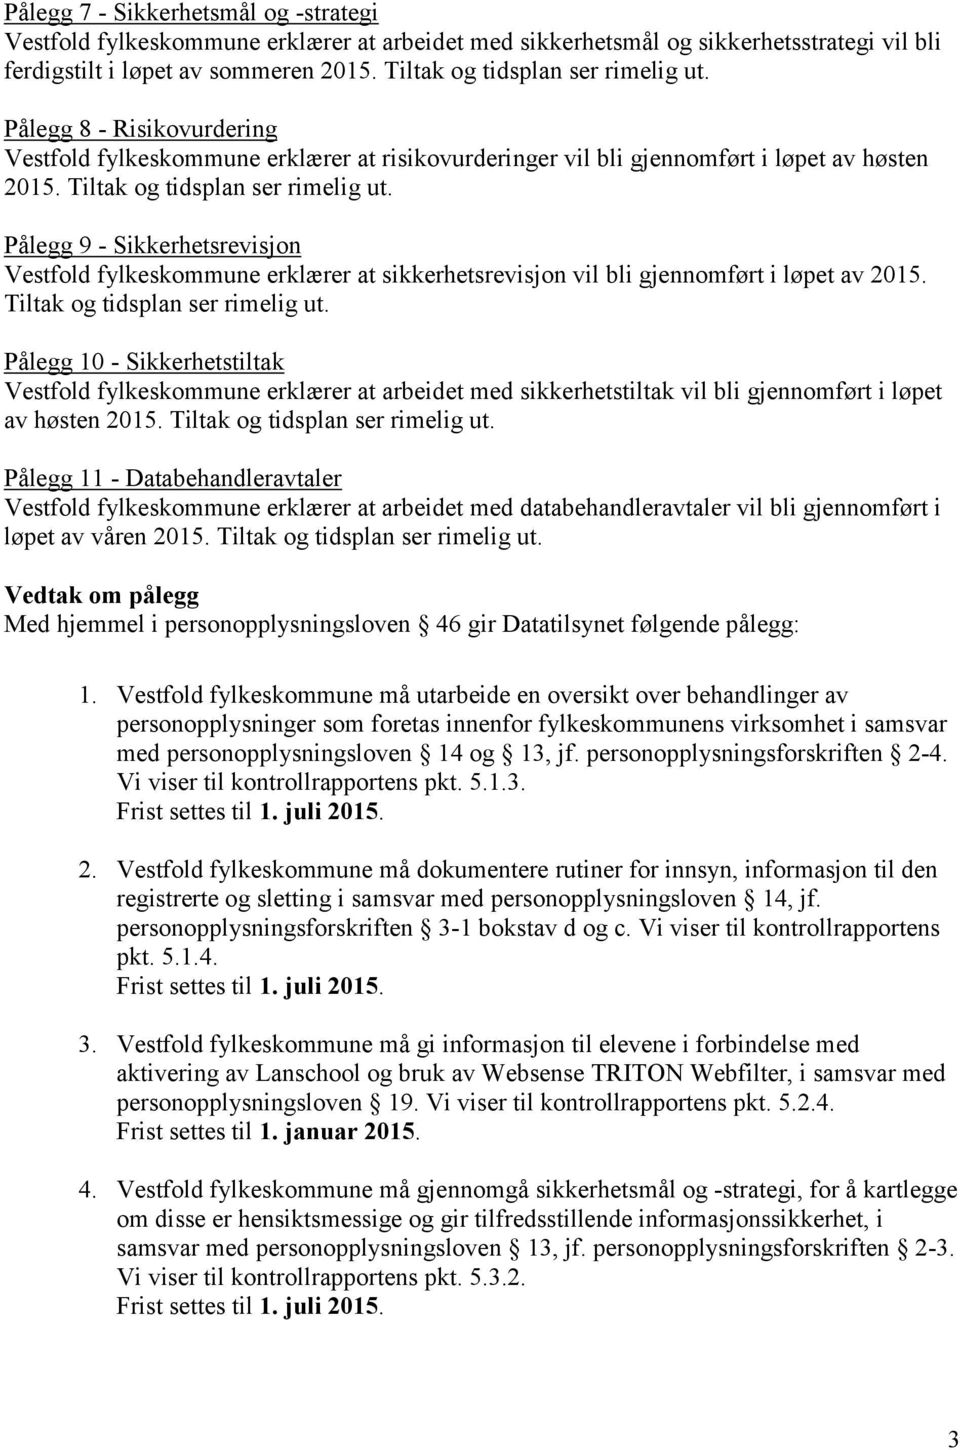 Pålegg 9 - Sikkerhetsrevisjon Vestfold fylkeskommune erklærer at sikkerhetsrevisjon vil bli gjennomført i løpet av 2015. Tiltak og tidsplan ser rimelig ut.